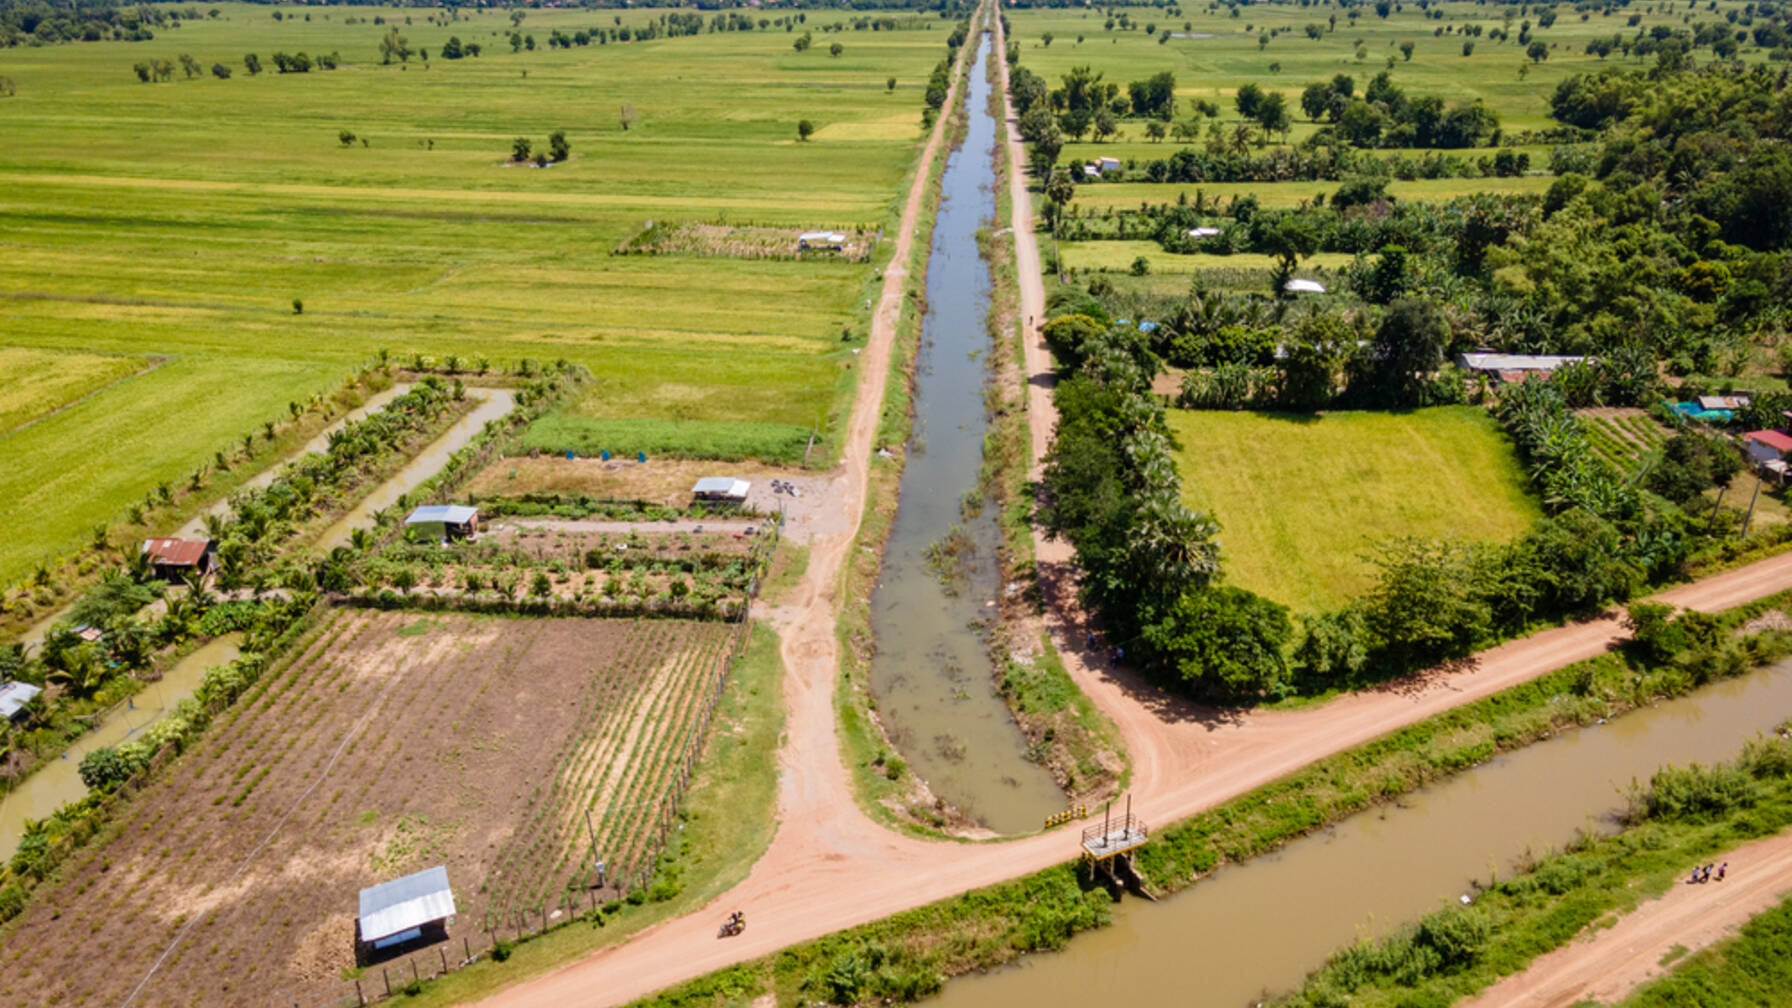 Il canale principale fornisce acqua ai canali secondari e a quelli più piccoli, in modo che tutti abbiano acqua a sufficienza per i loro campi.